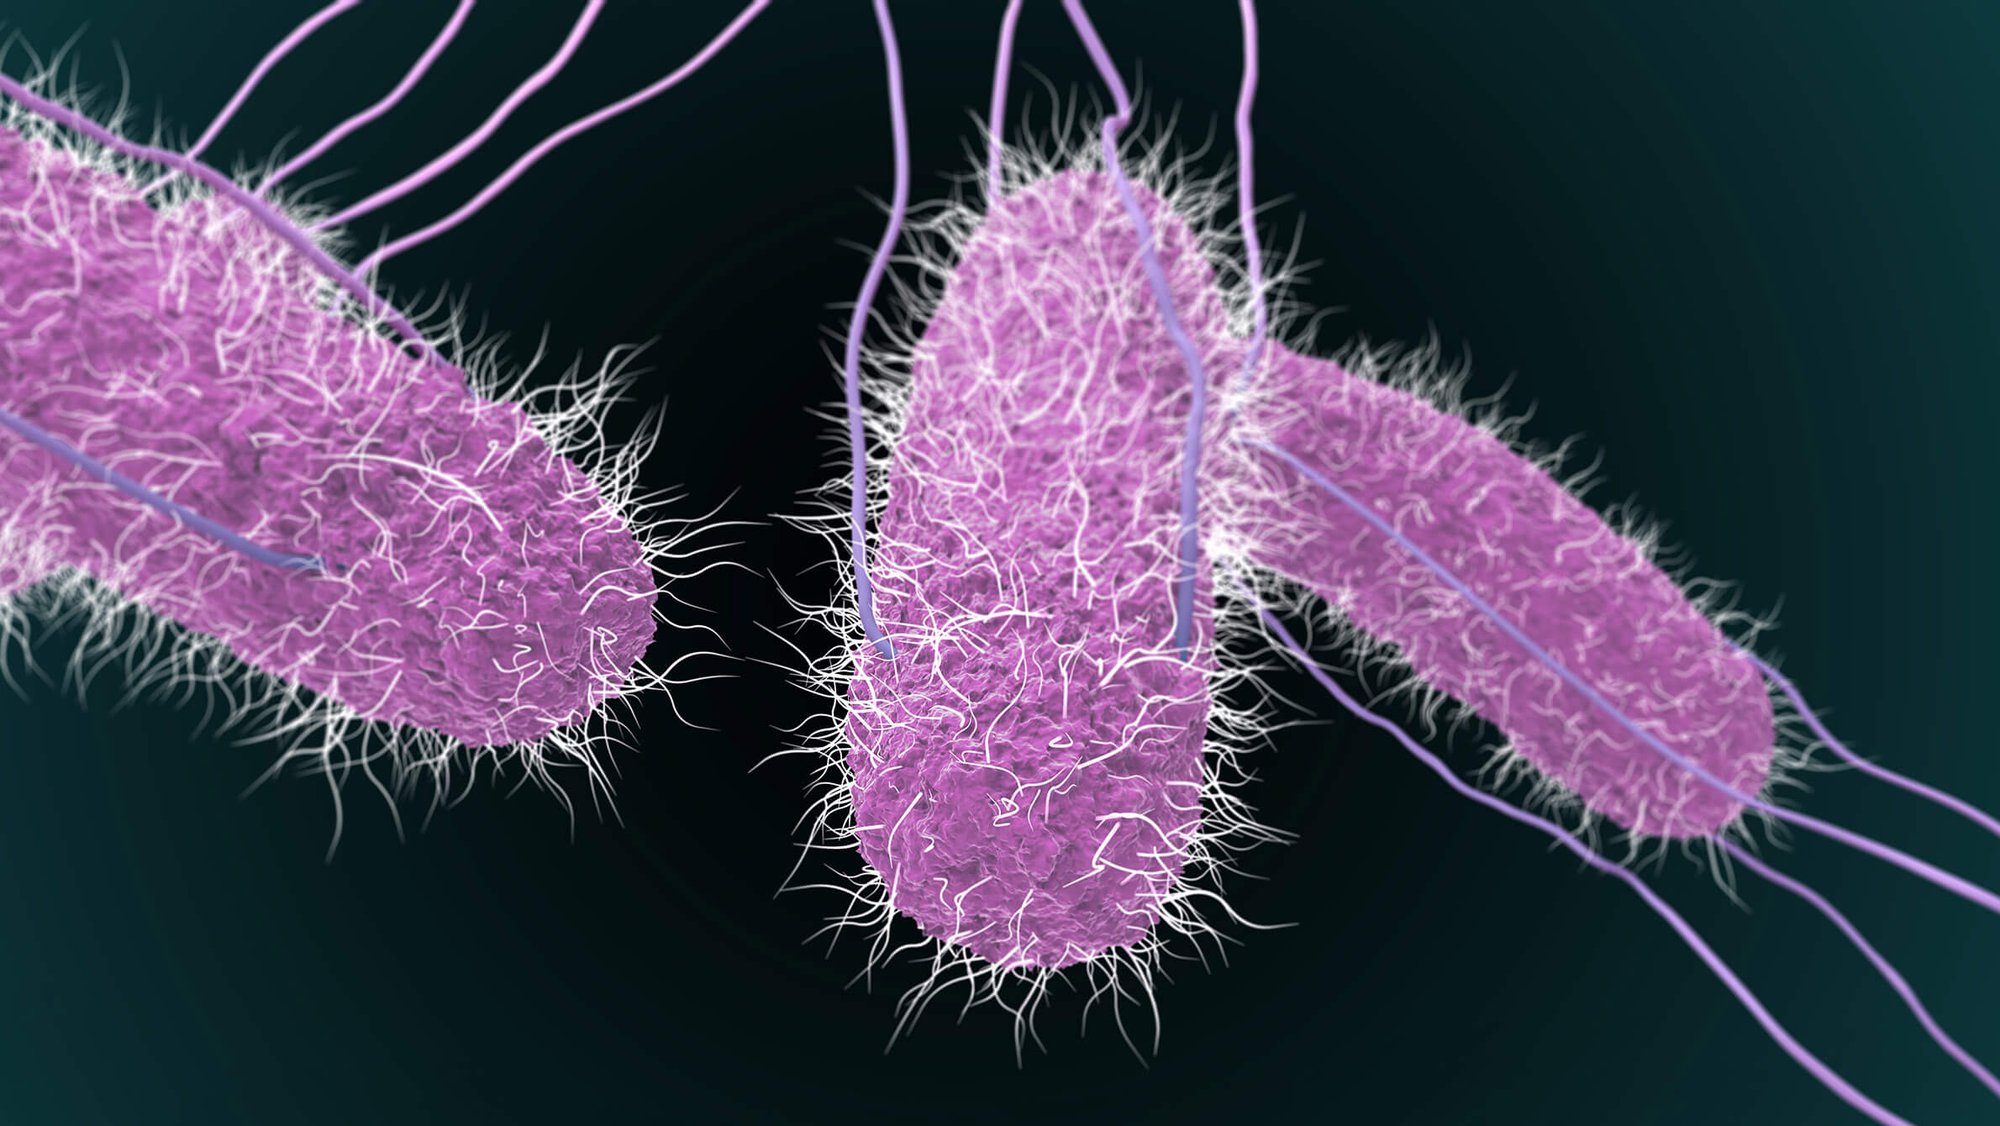 Thực phẩm nào có thể nhiễm khuẩn Salmonella - nguyên nhân được hướng đến trong vụ ngộ độc tại trường iSchool Nha Trang? - Ảnh 1.